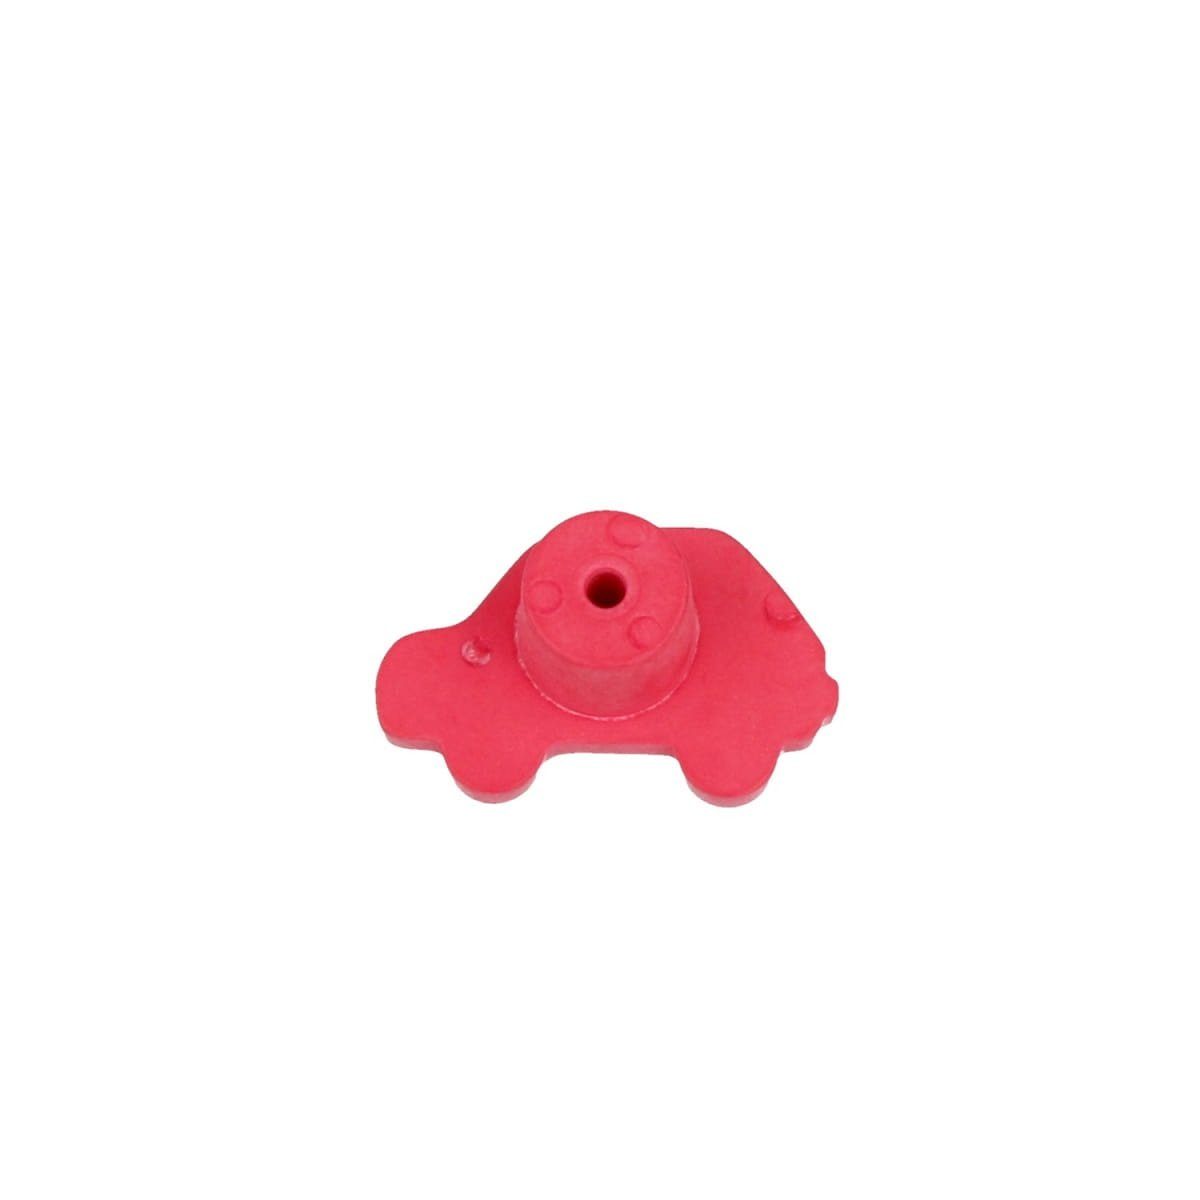 Auto Türbeschlag Modell MS Beschläge Rotes Möbelknopf Schubladenknopf